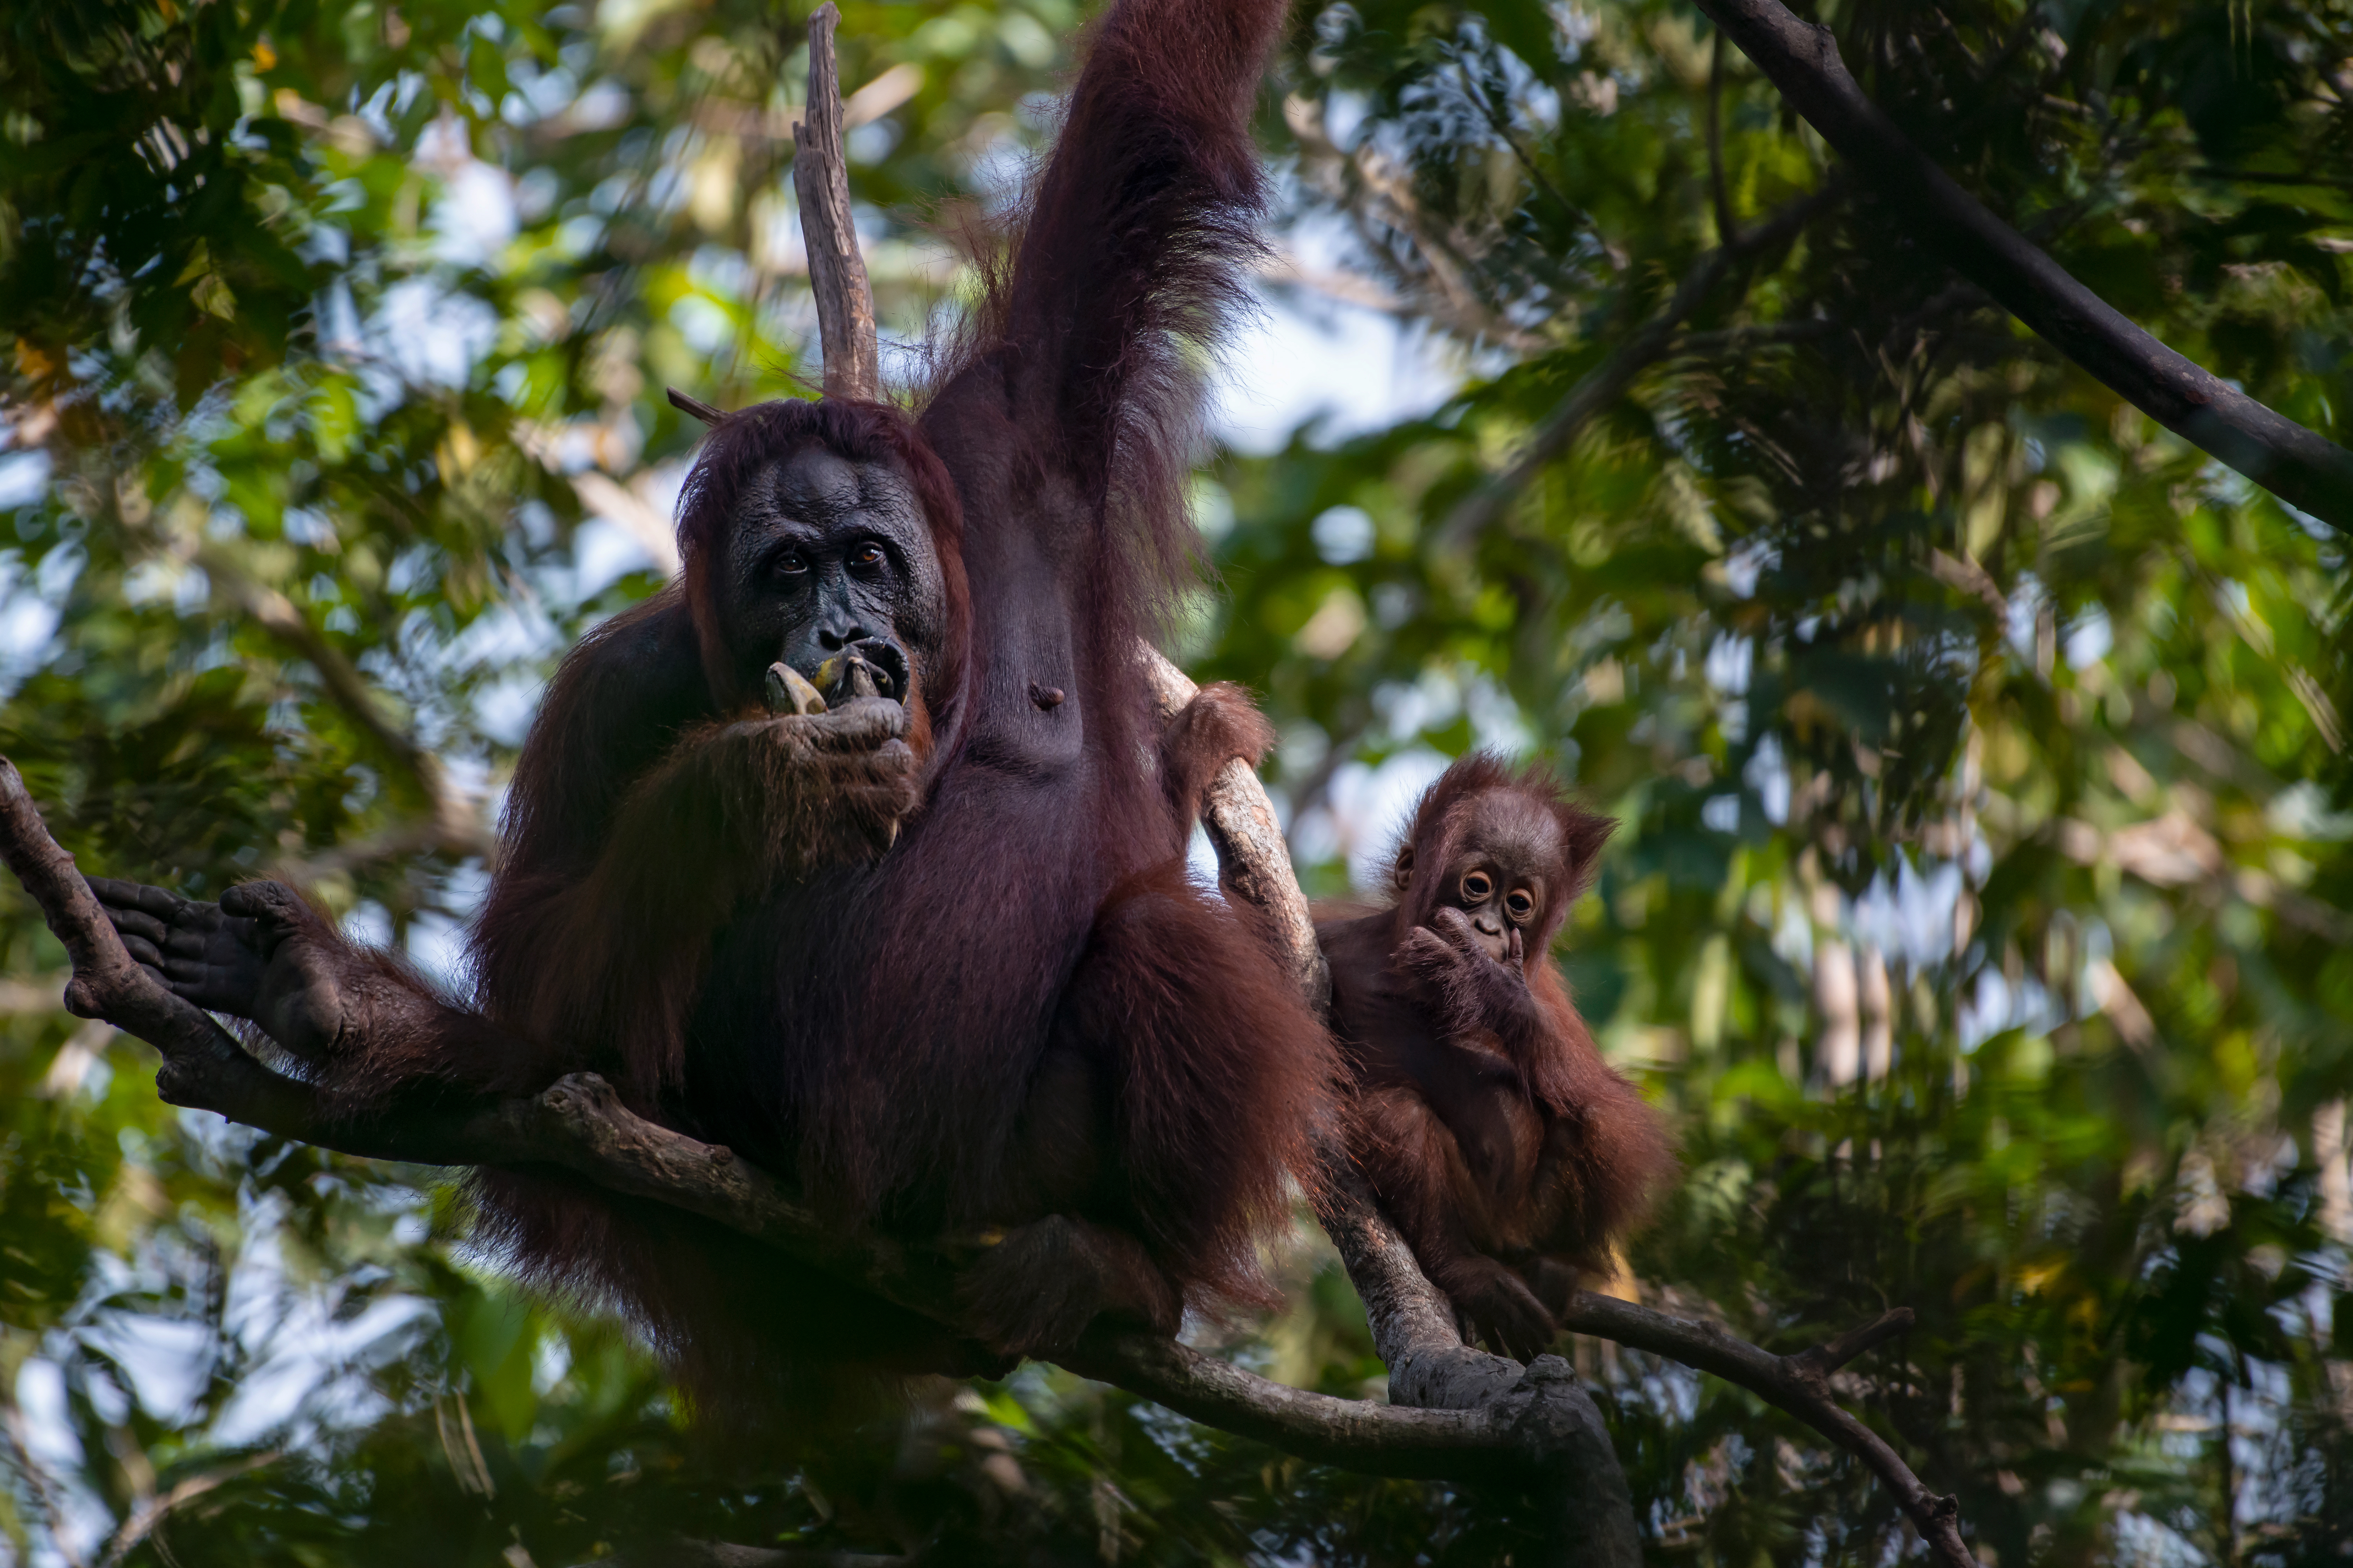 Orangutans in the wild